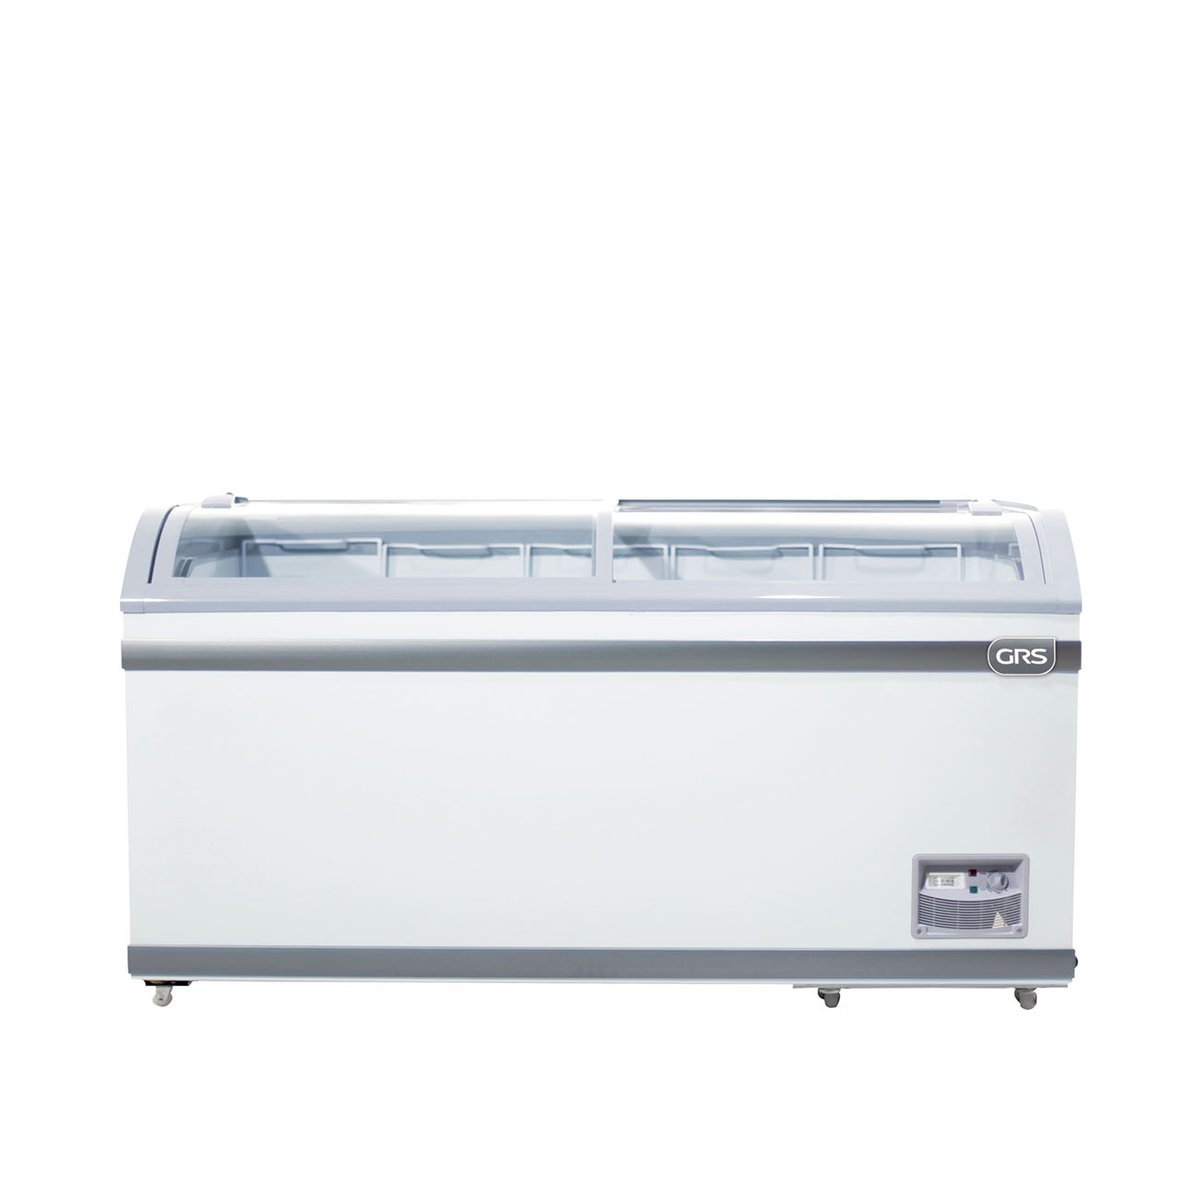 ✓ Comprar Mini Congelador puerta de cristal 90 litros Bartscher 700342